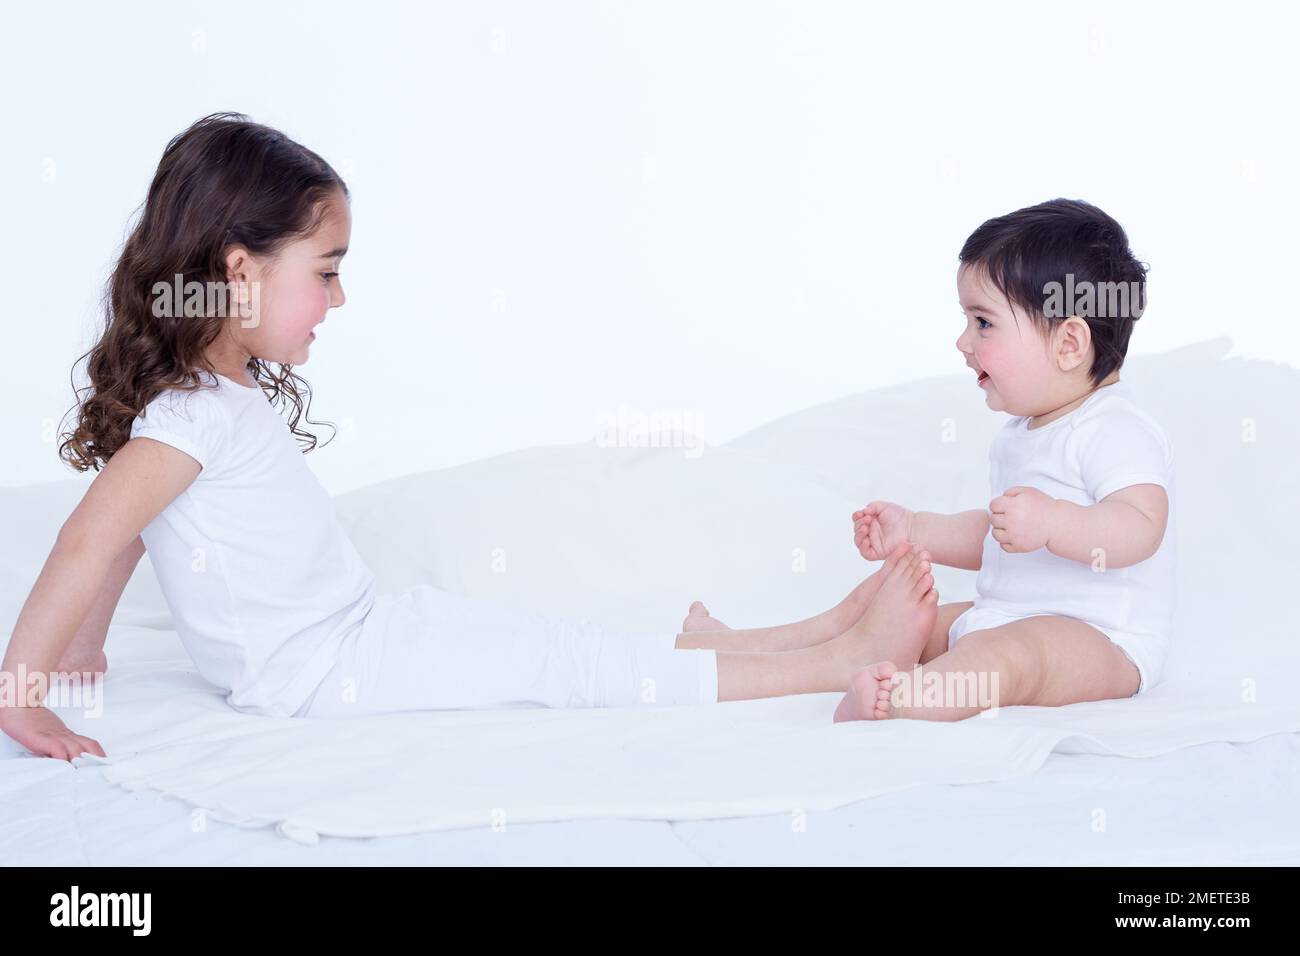 Petite fille (40 semaines) assise sur le lit, face à sa sœur (3,5 ans) qui s'étend de ses jambes vers elle Banque D'Images